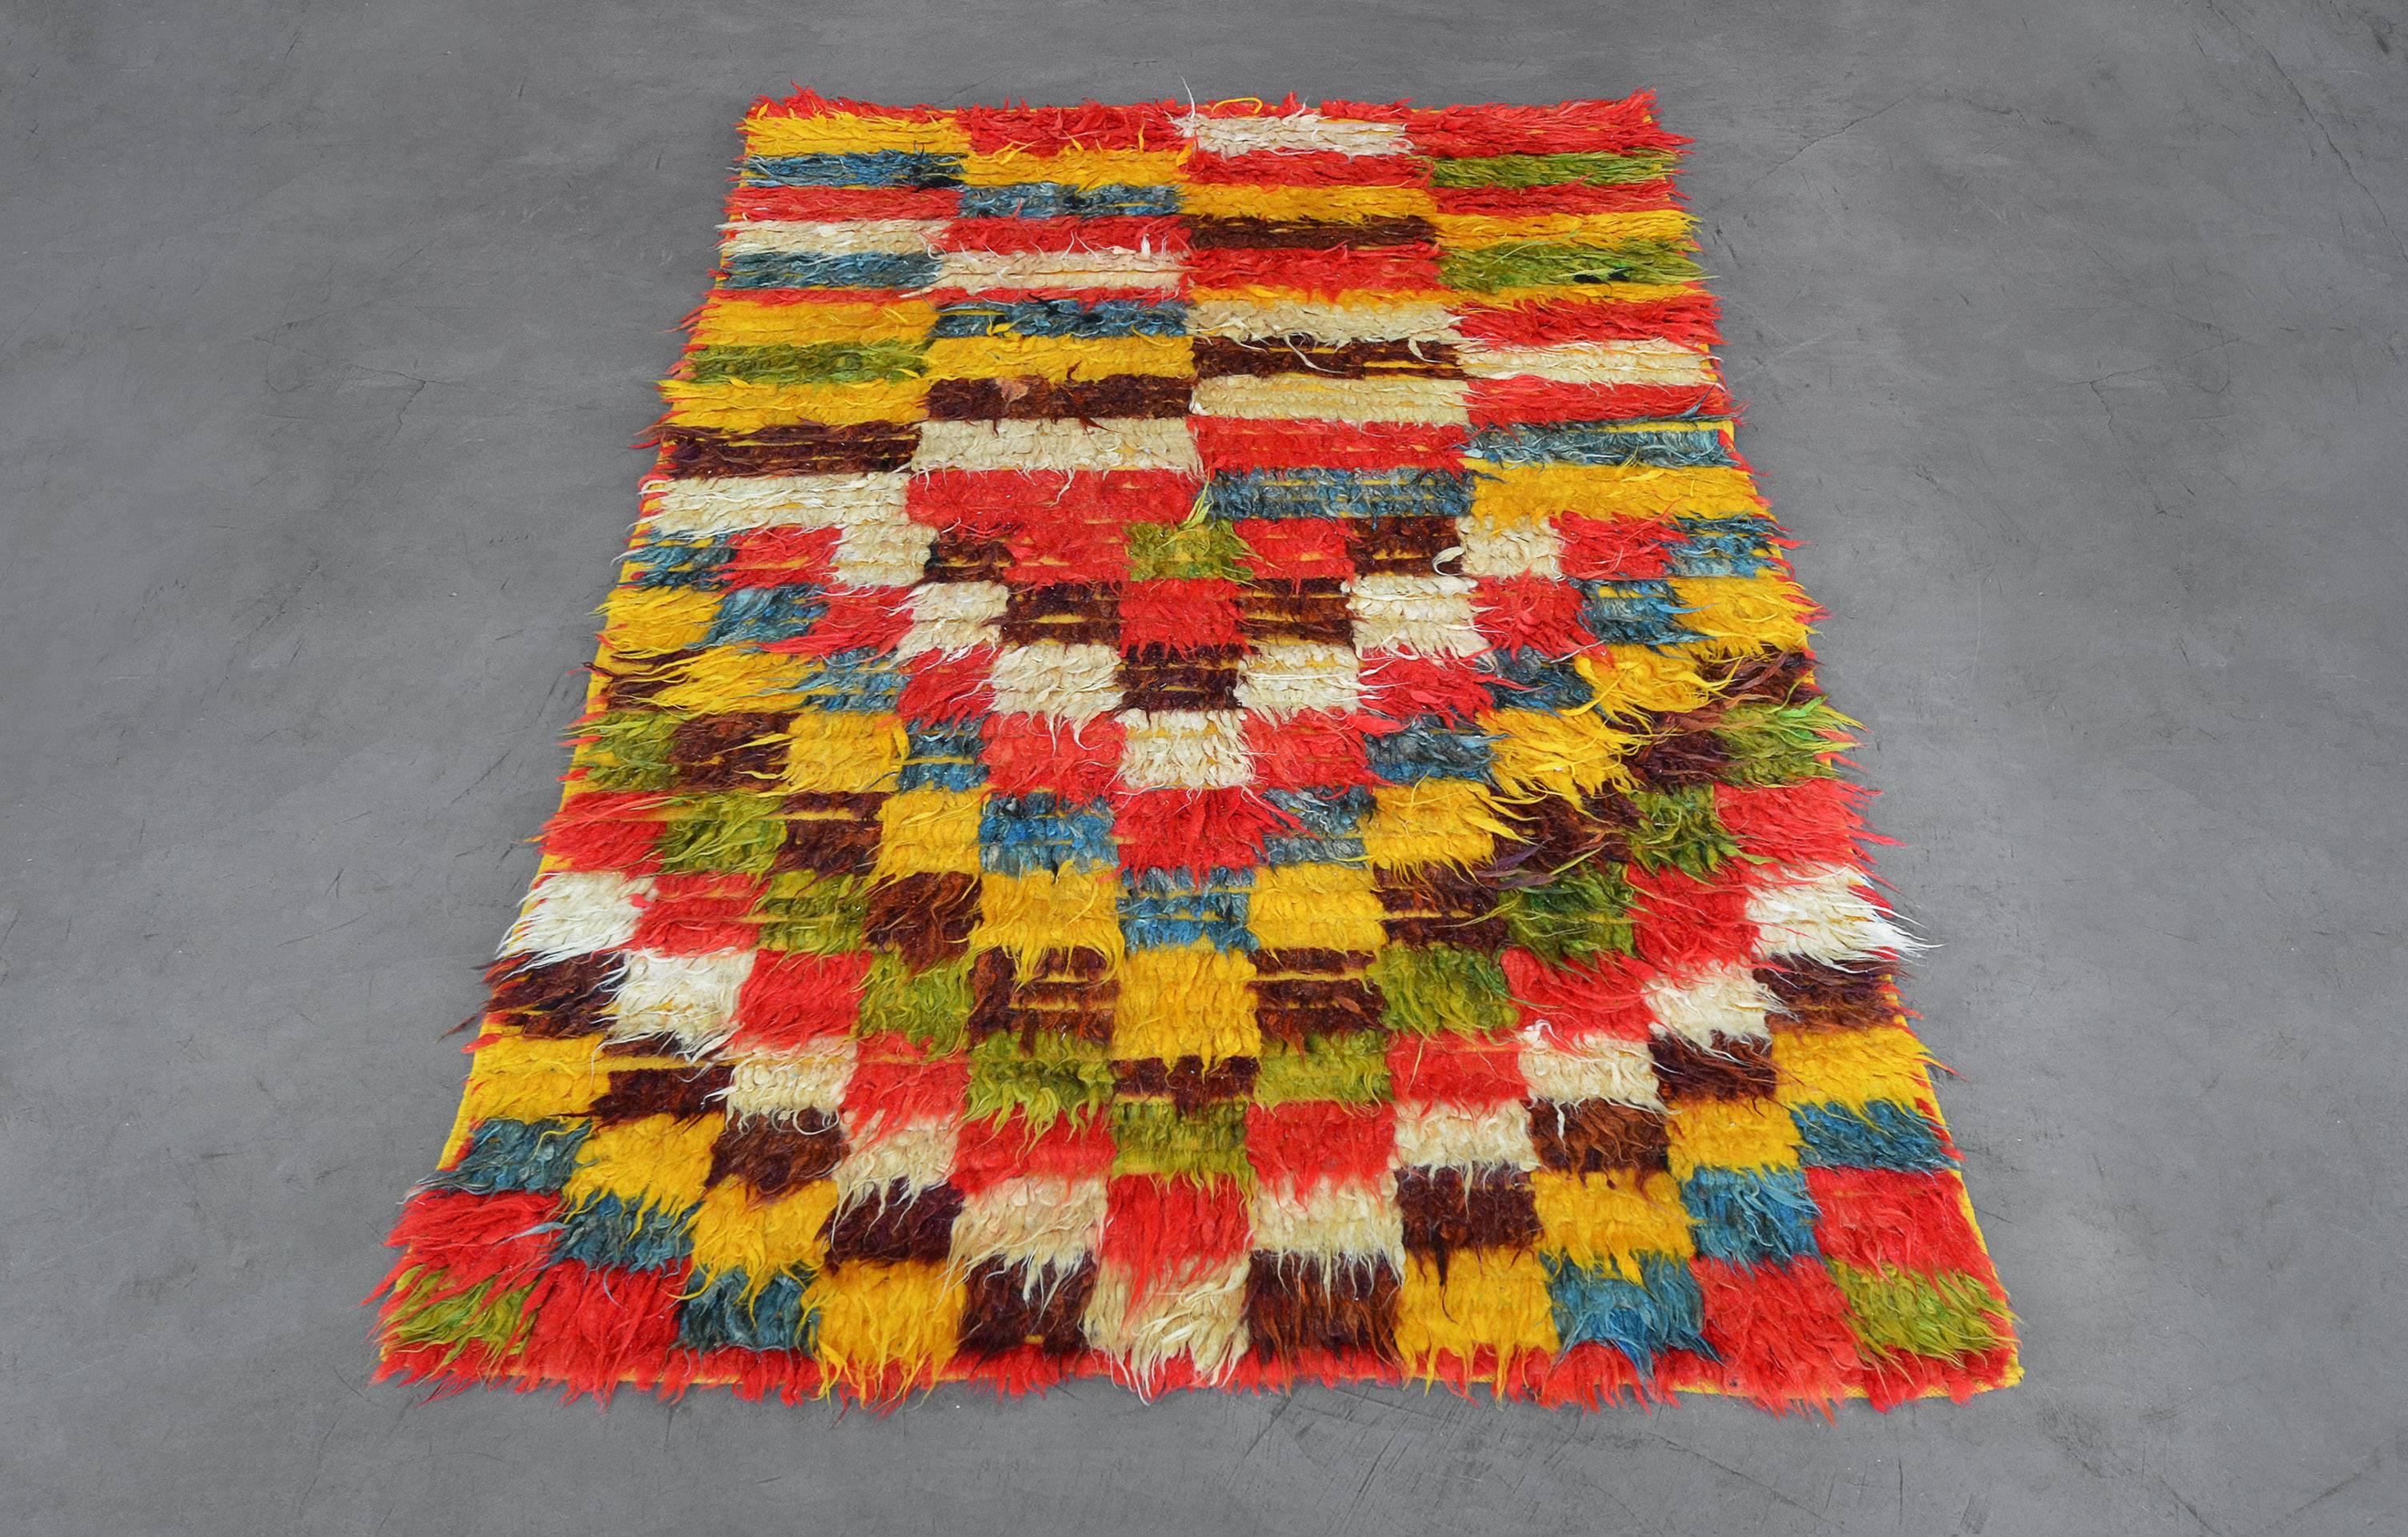 Ce tapis marocain vintage des années 1970 à poils profonds présente un champ de damier polychrome tufté rouge corail, vert clair, bleu nuancé, ivoire, brun chocolat et jaune d'or. La moitié inférieure du tapis est composée de panneaux horizontaux